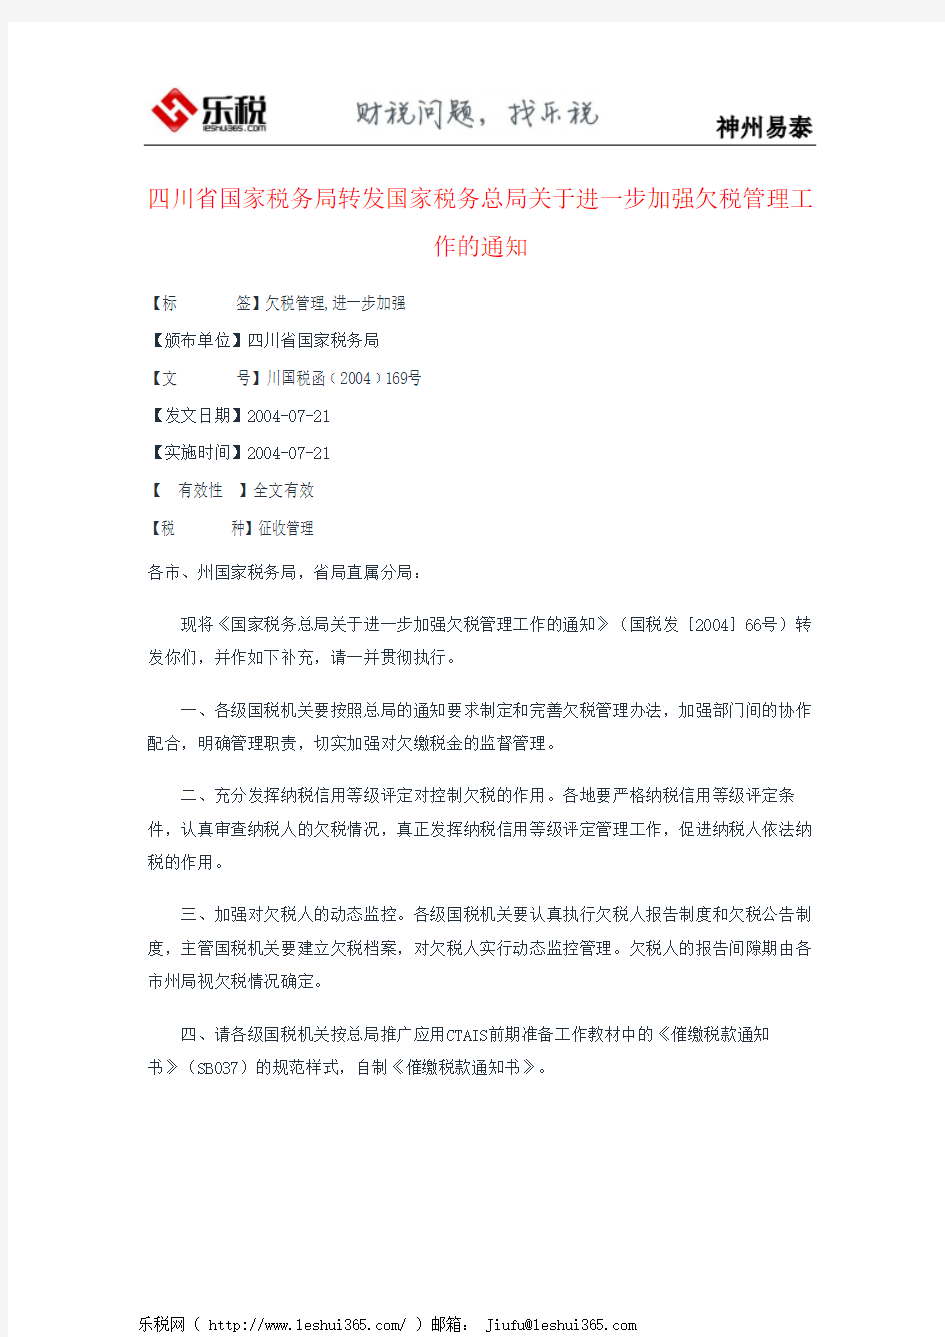 四川省国家税务局转发国家税务总局关于进一步加强欠税管理工作的通知